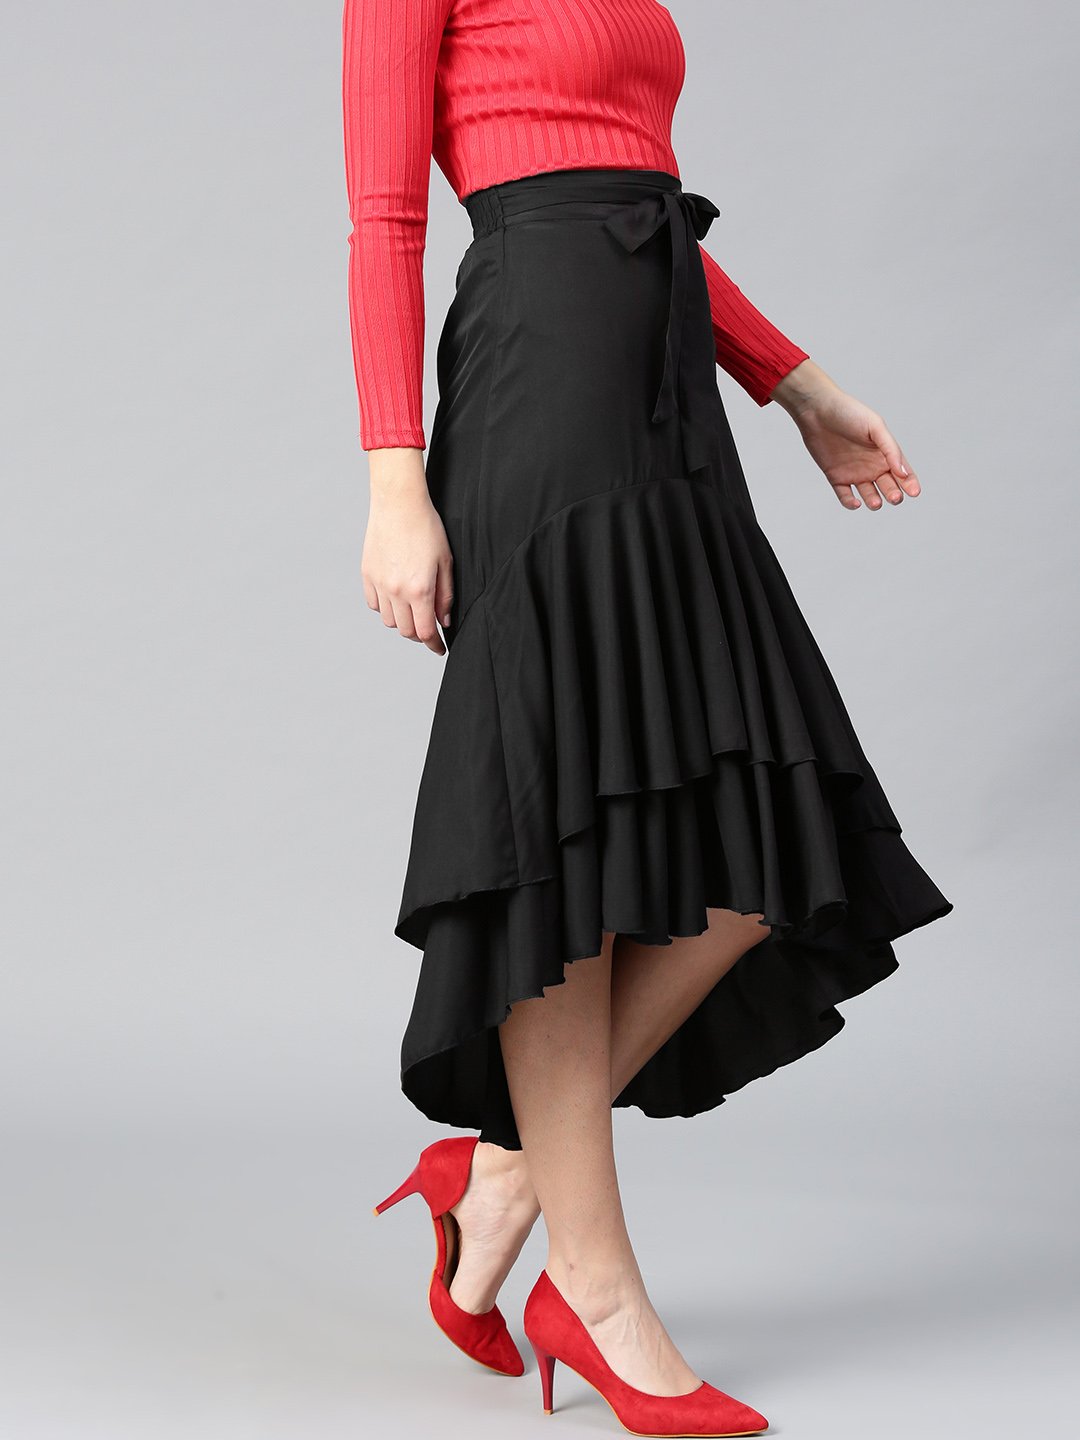 Black Polyester Crepe Gore Skirt for Women, Knee Length Skirt With Pockets,  A-line Custom Handmade - Etsy